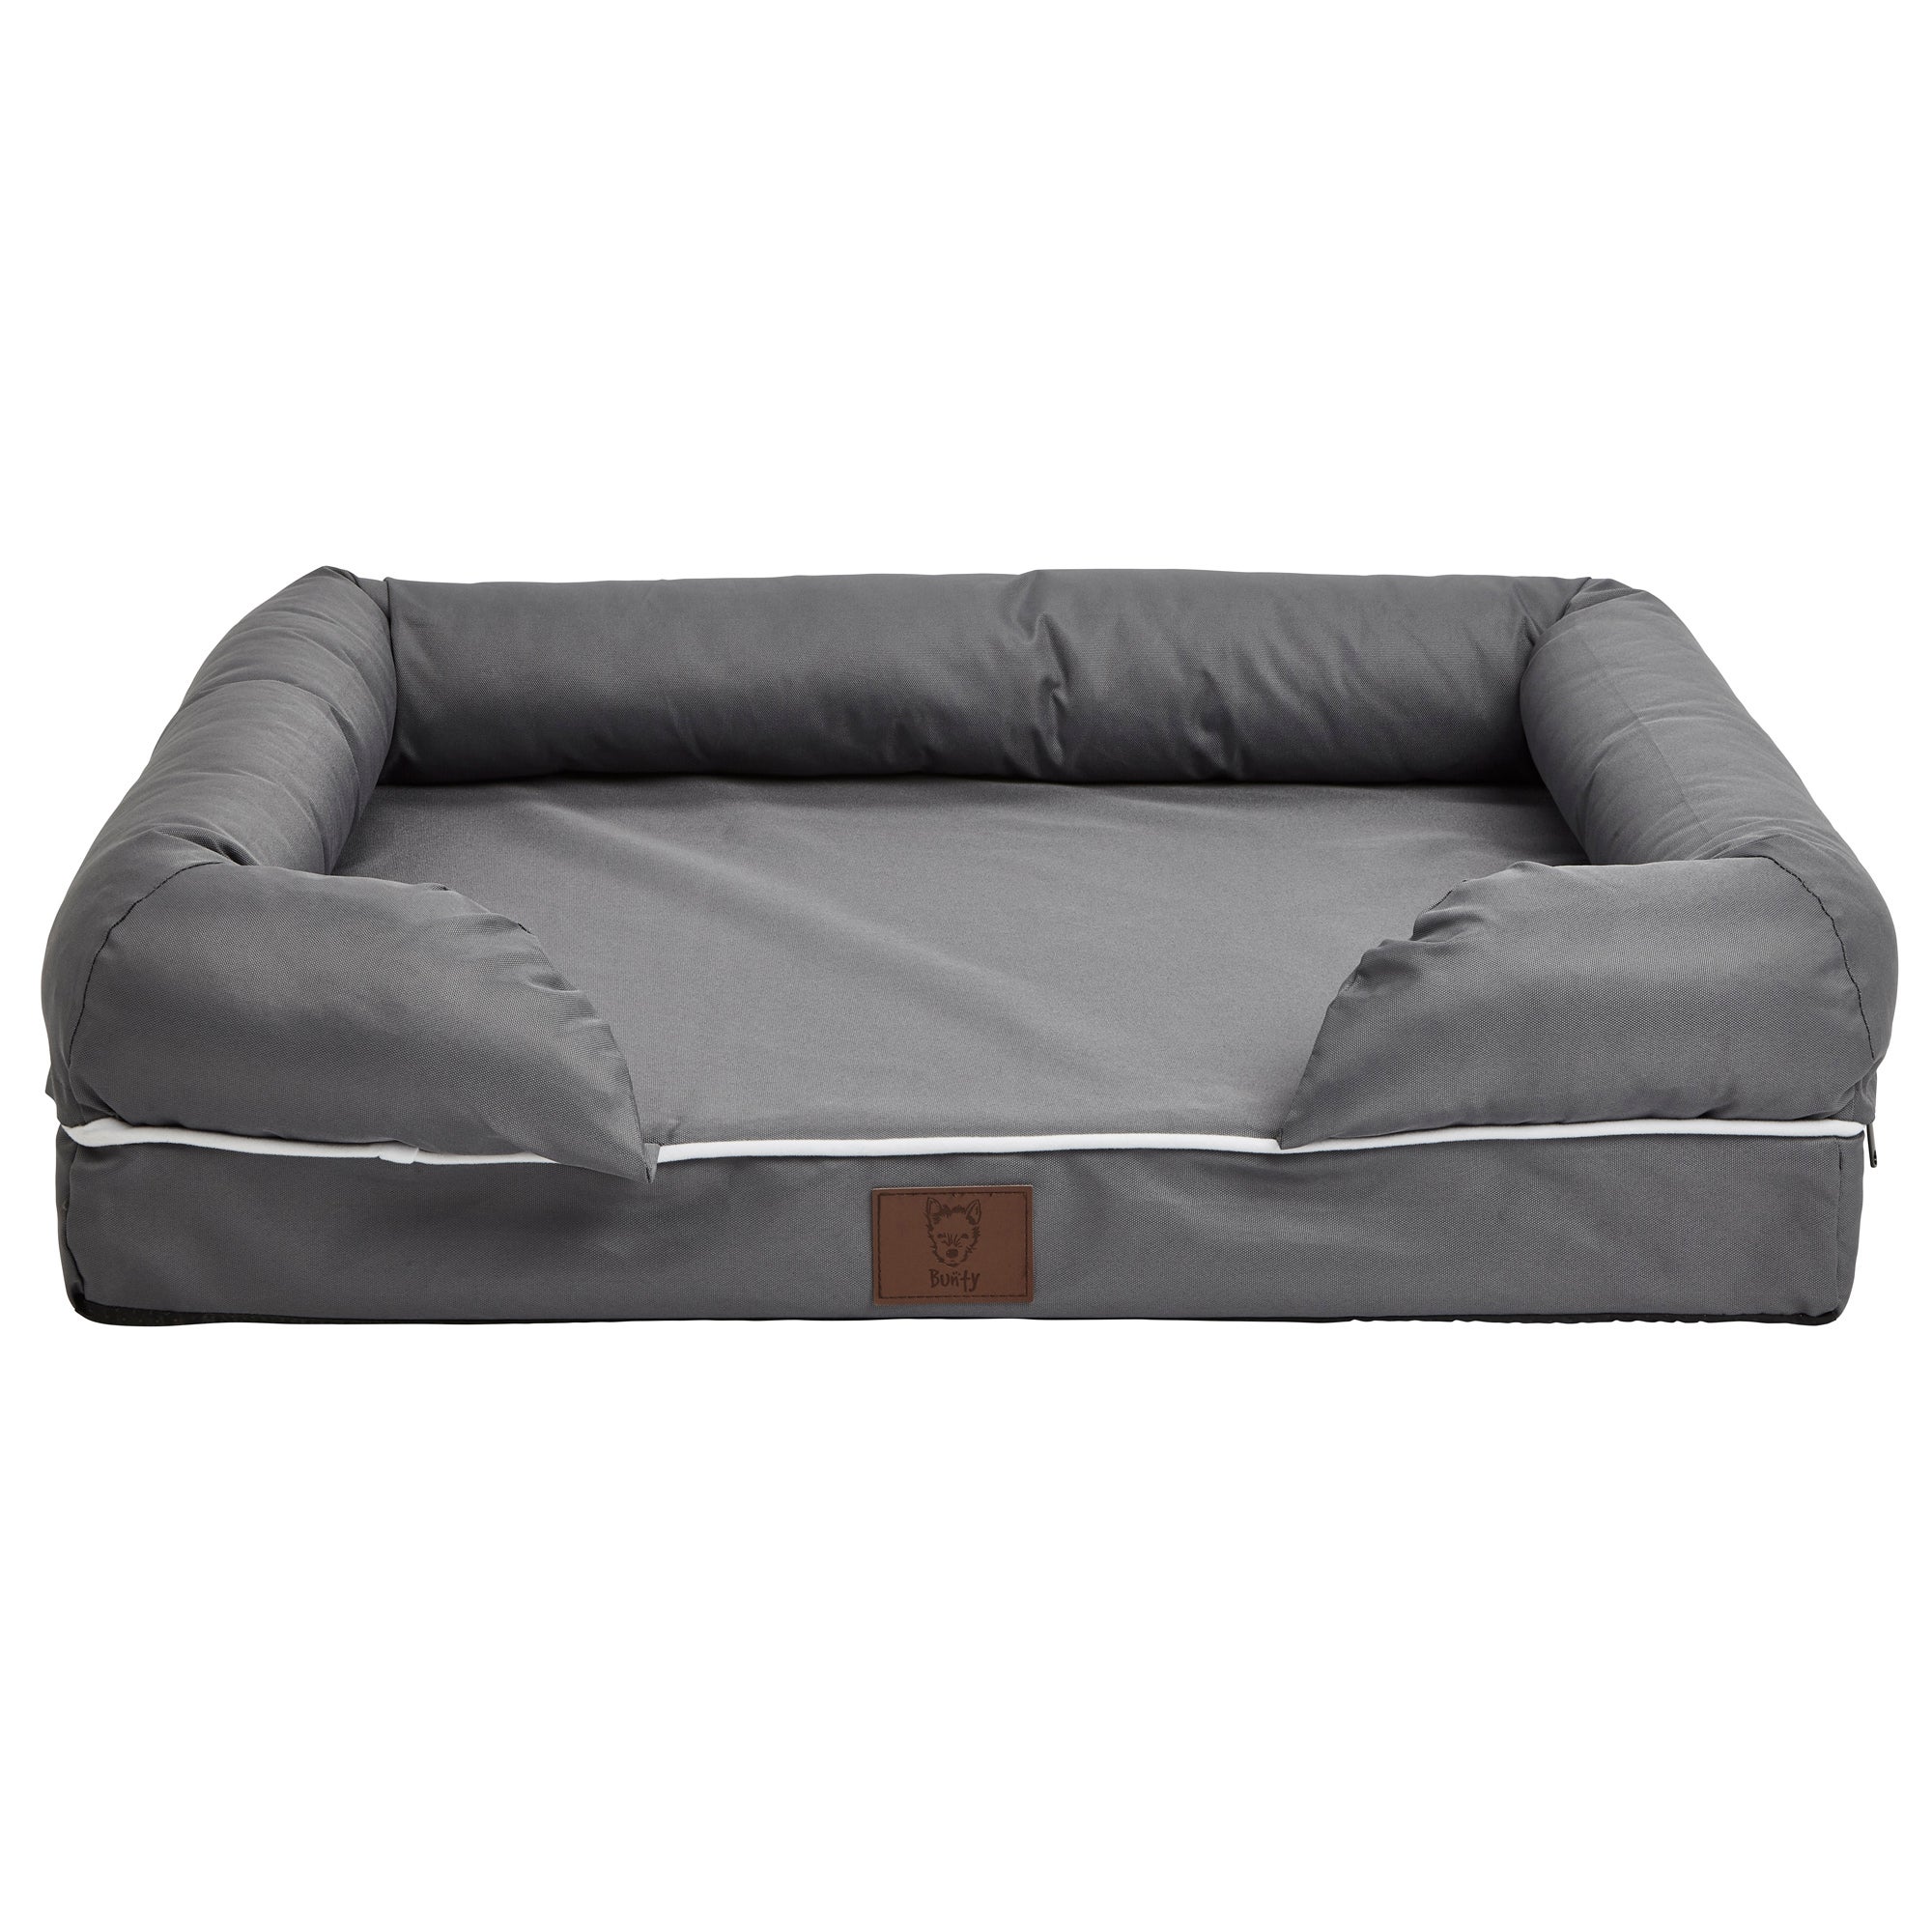 Bunty Grey Waterproof Cosy Couch Dog Bed Grey